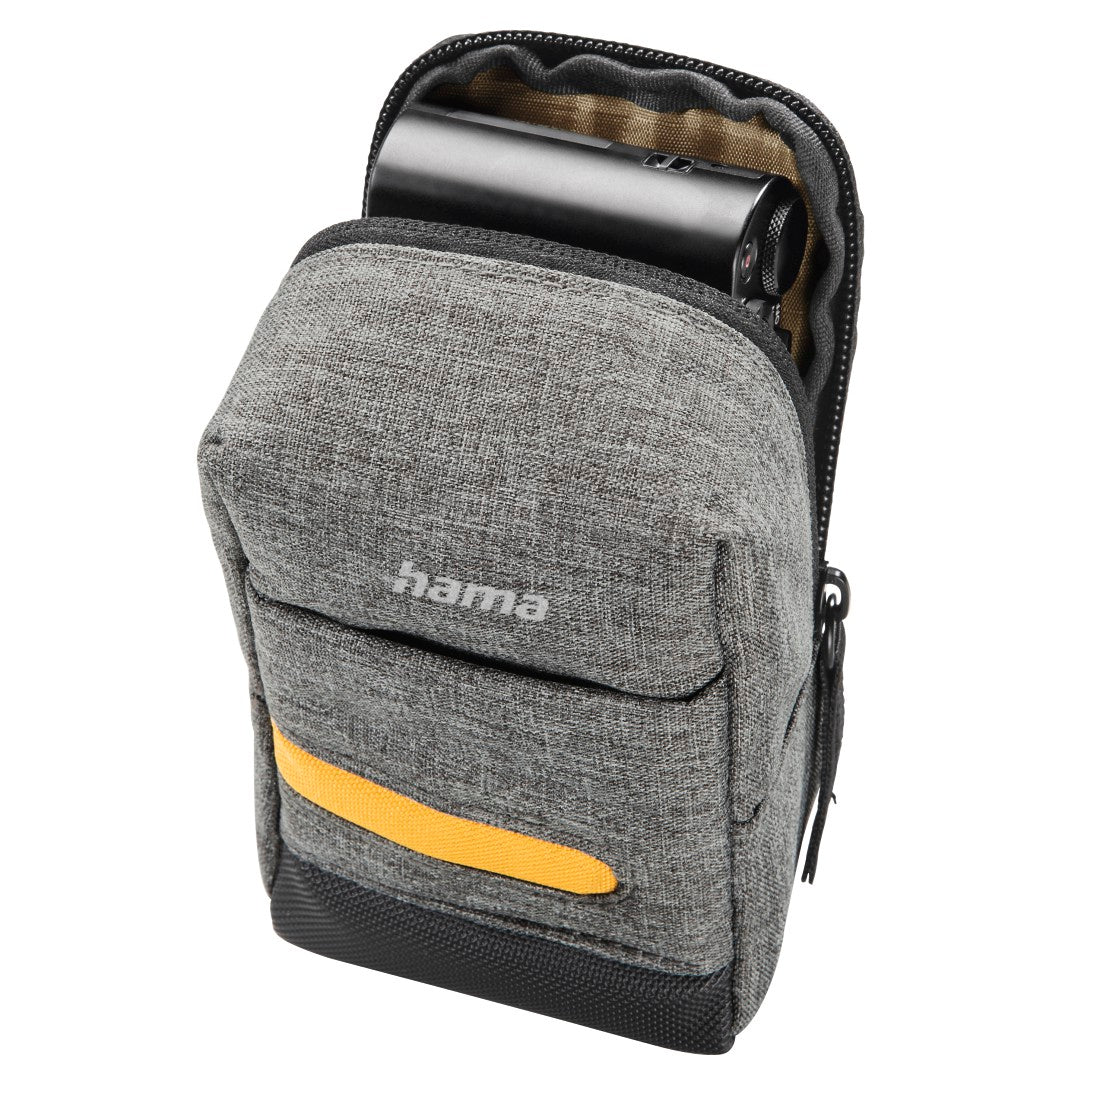 Hama 90 M Terra Compact Camera Bag for small digital cameras - Grey - Eco Friendly